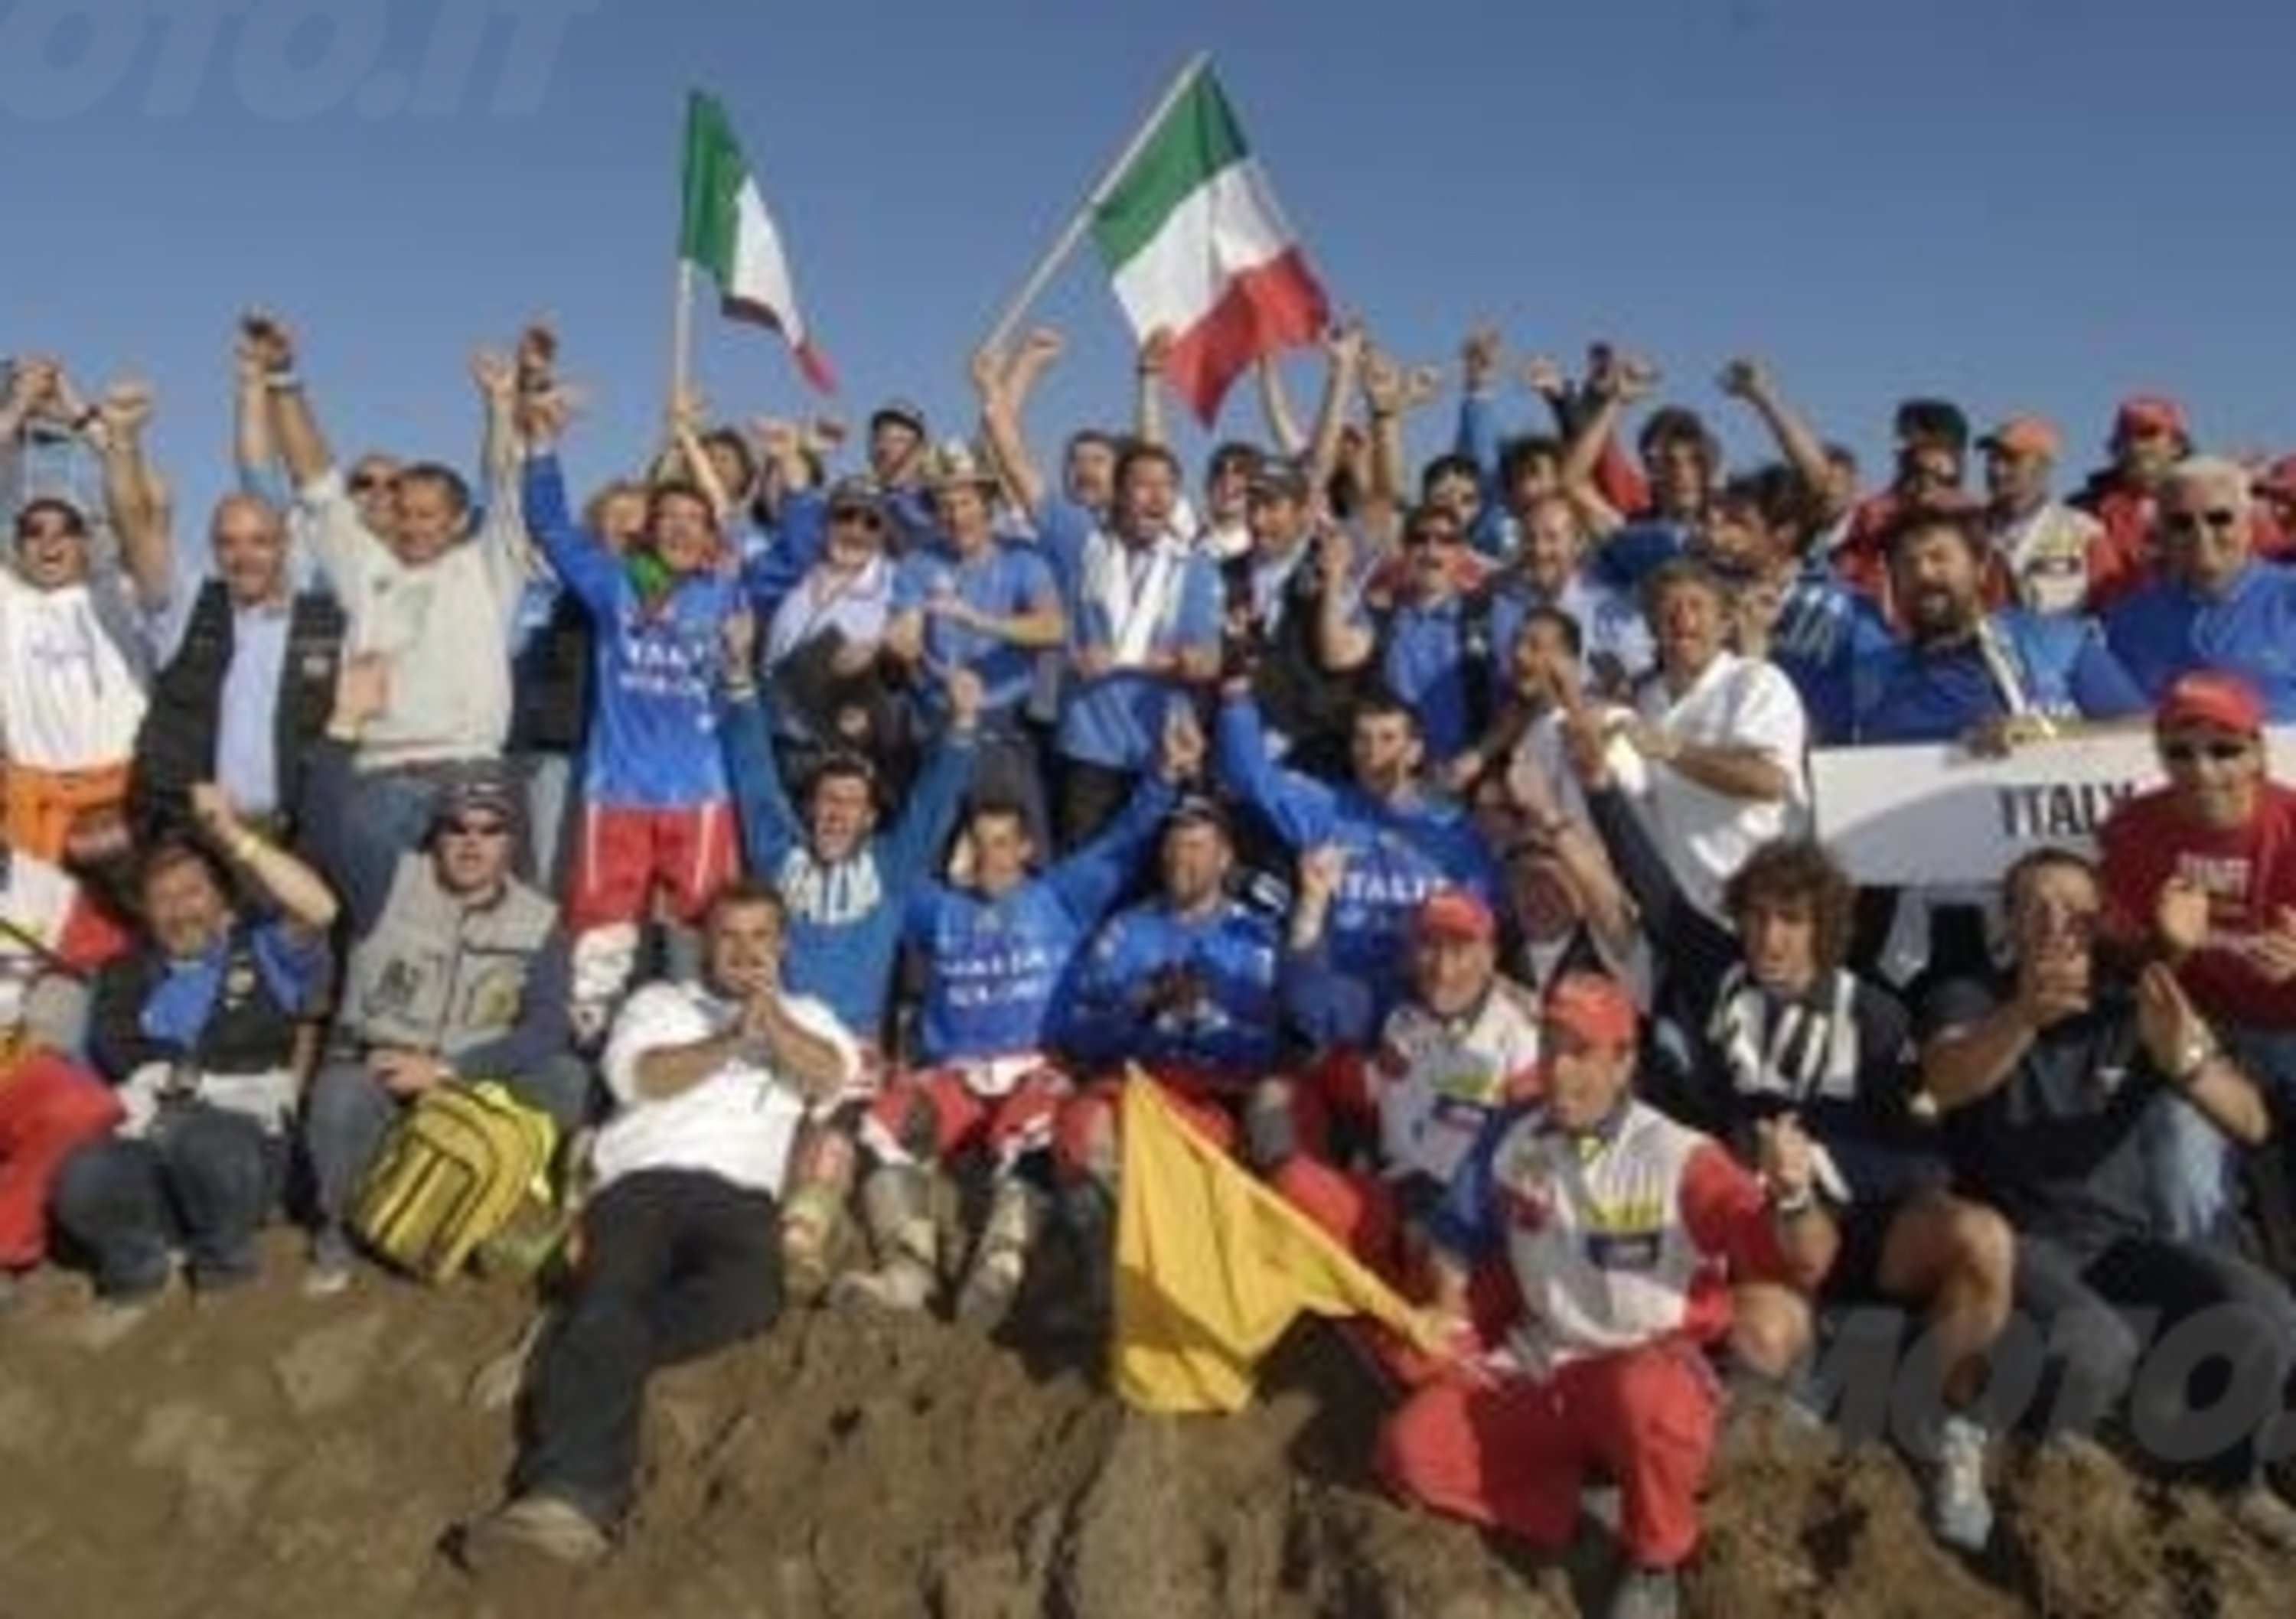 La FMI presenta la squadra italiana alla Sei Giorni di Enduro